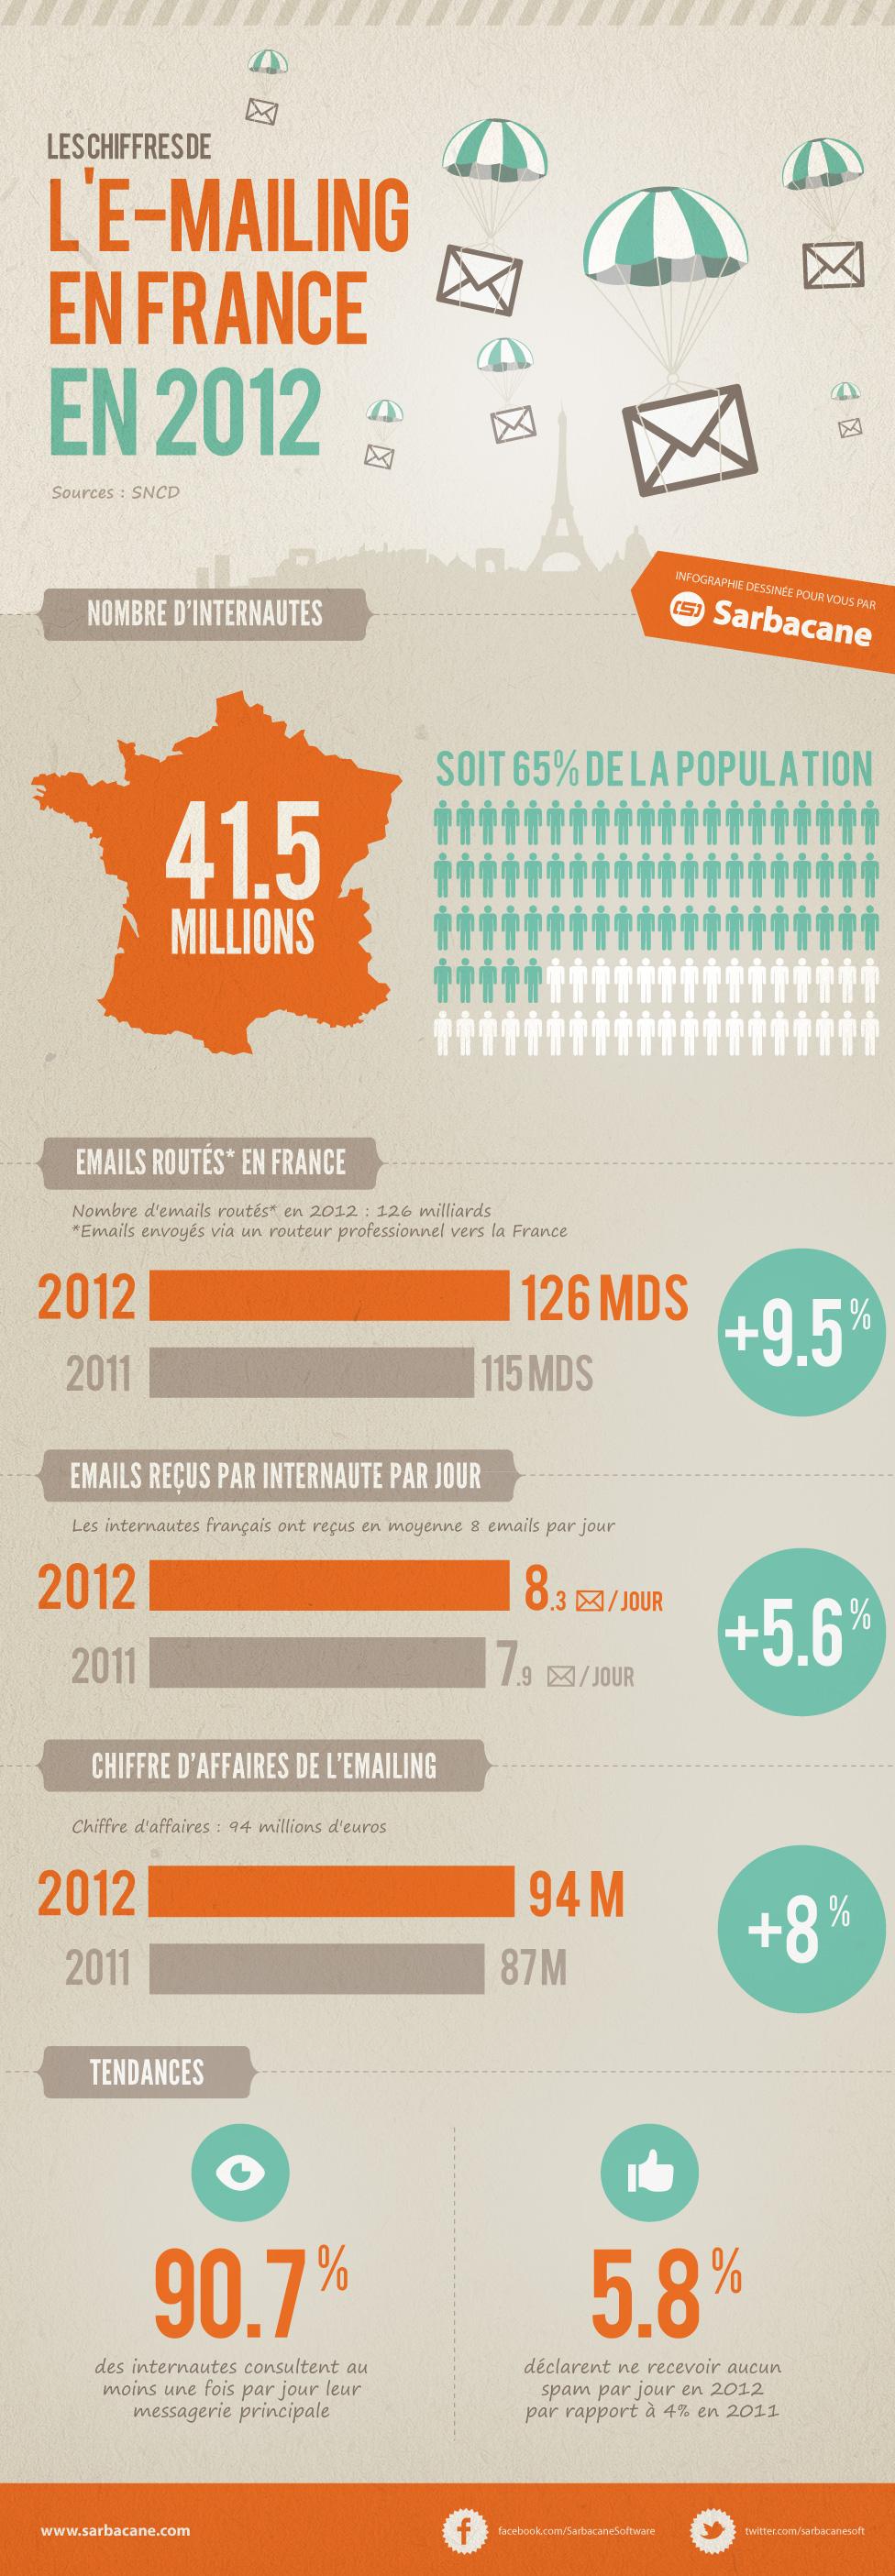 infographie1 Les chiffres de lemailing en France en 2012